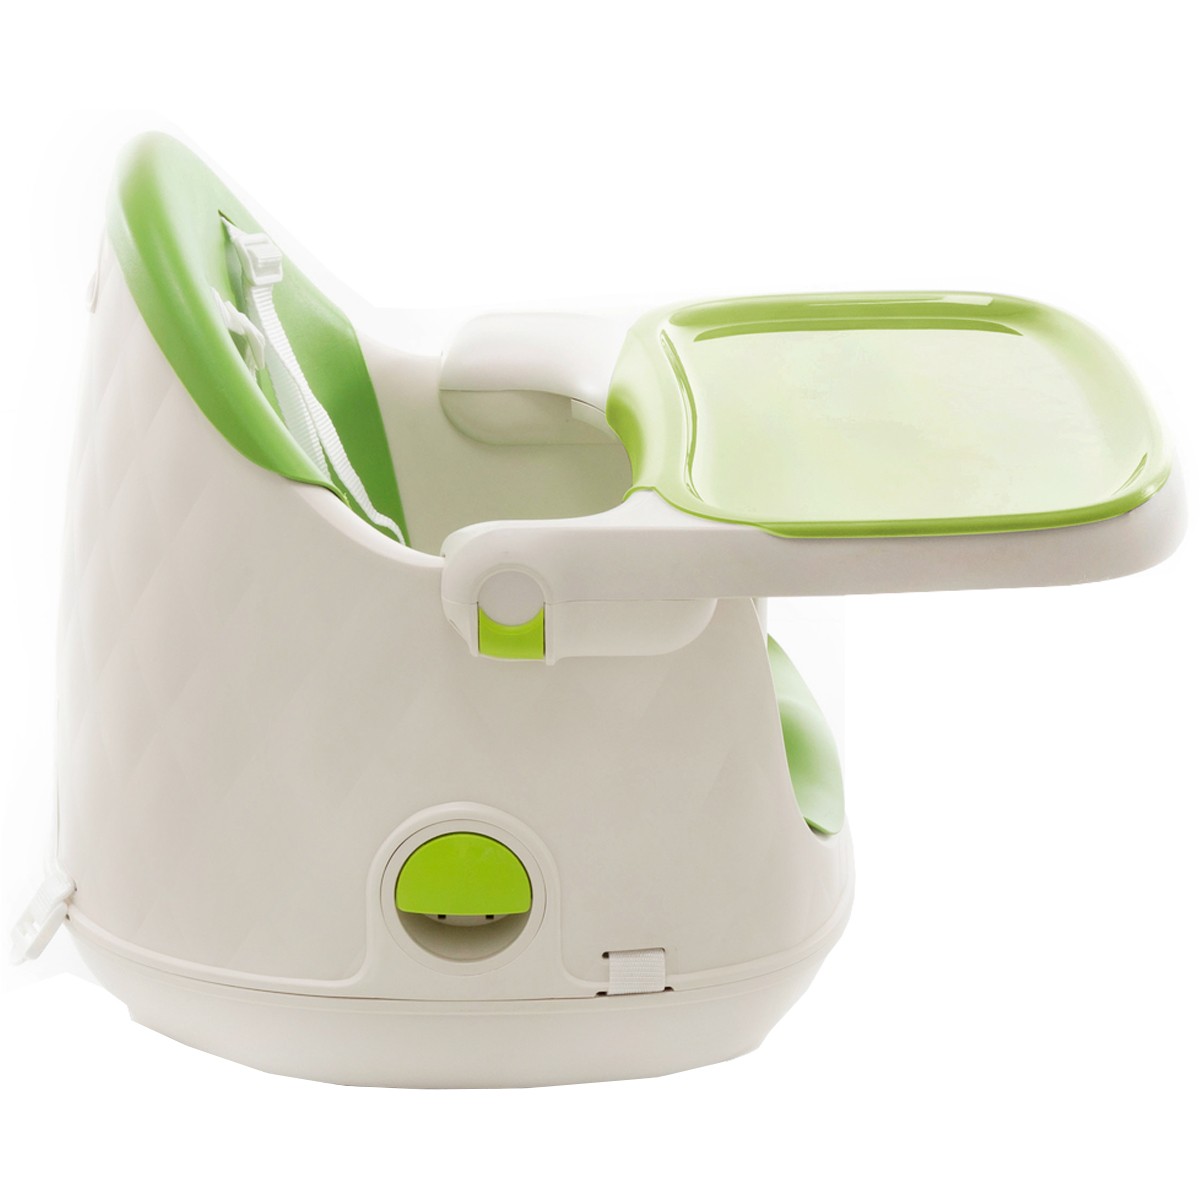 Cadeira de Refeição Infantil Jelly 3em1 Desmontável Portátil Alimentação Criança Bebê De 6 Meses a 25kg Green - Safety 1st